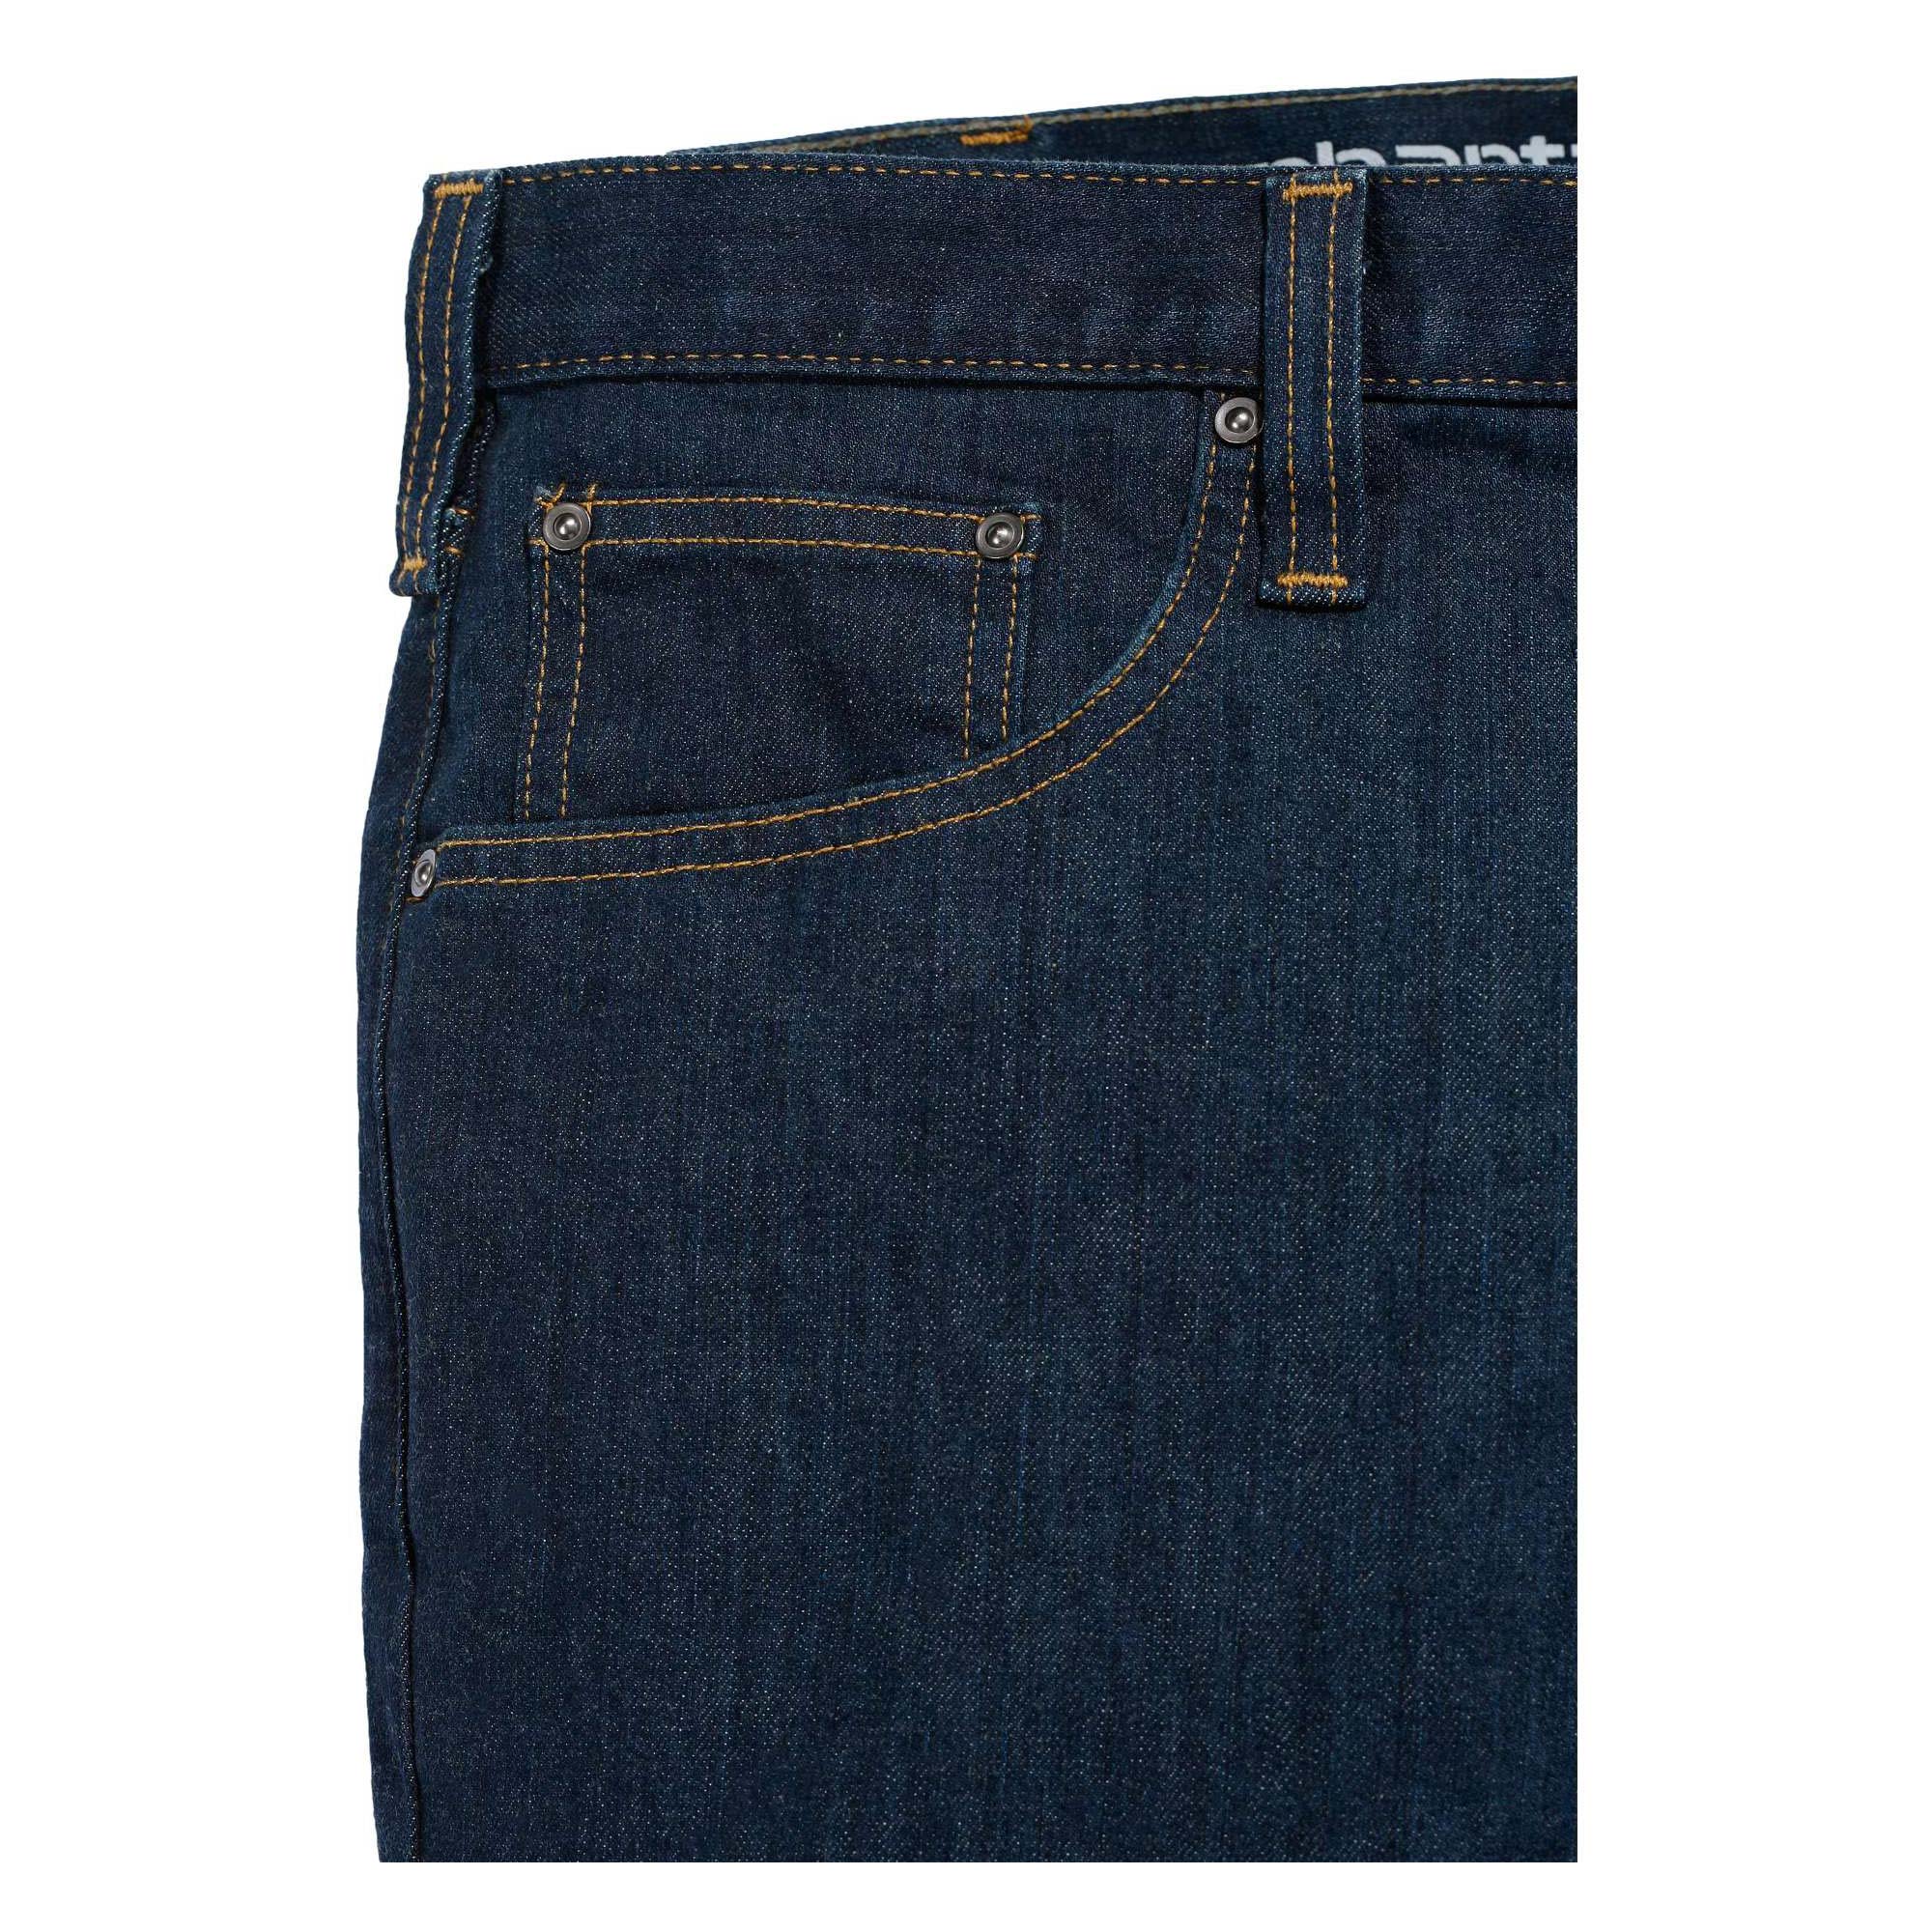 Carhartt Rugged Flex Straight Tapered Jeans dunkelblau W30/L30